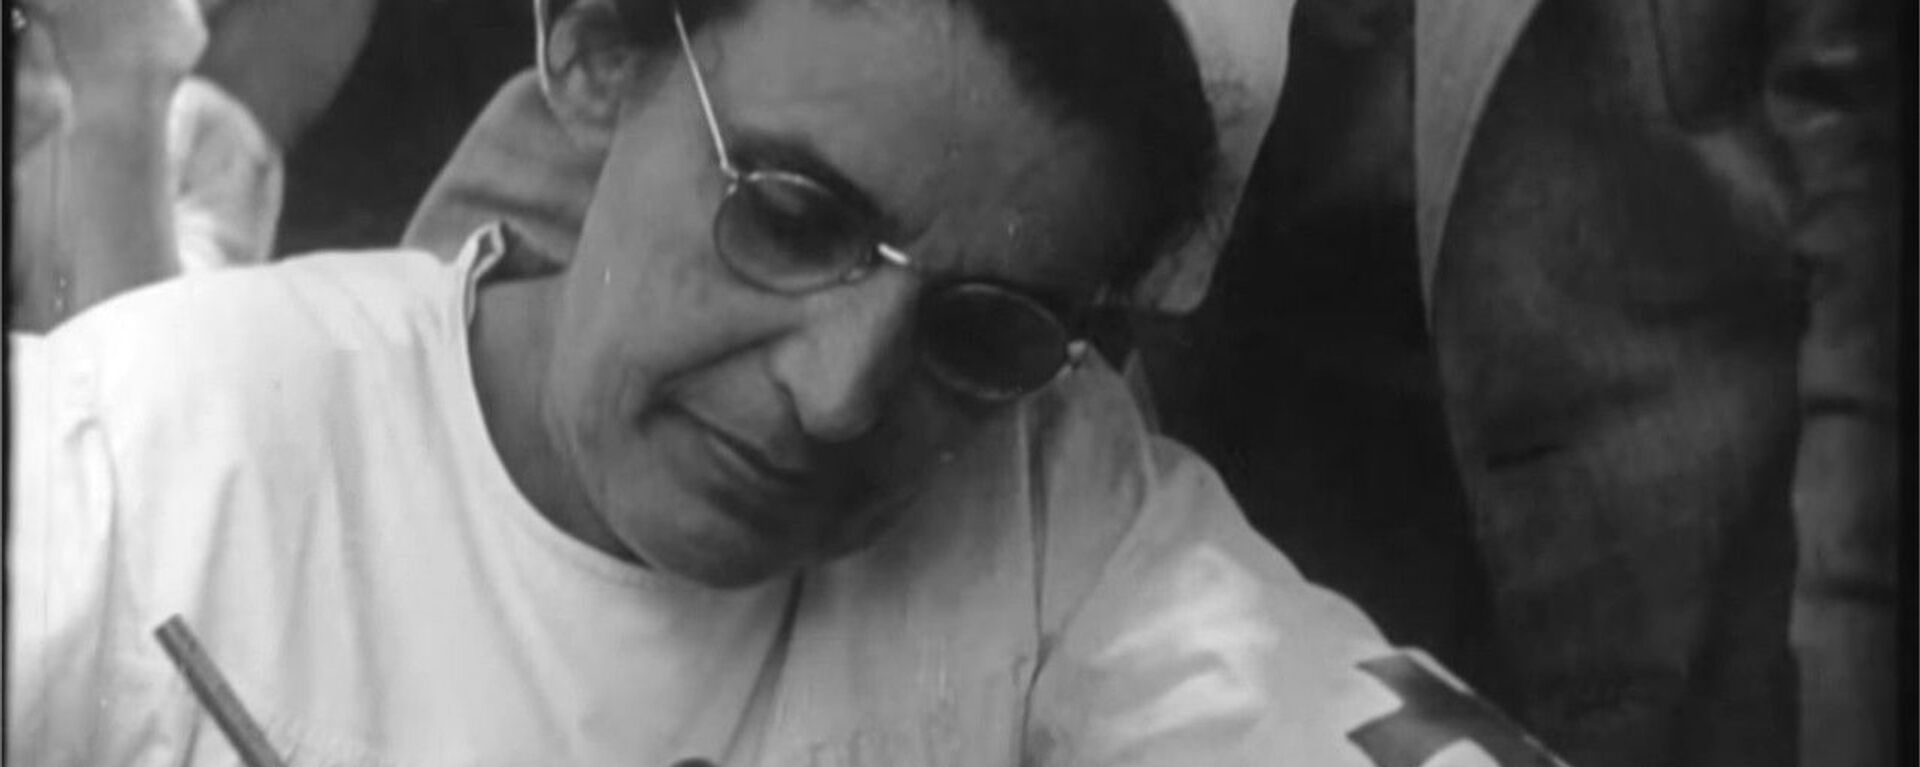 Diana Budisavljević popisuje decu koju spašava iz logora u NDH  - Sputnik Srbija, 1920, 09.04.2021